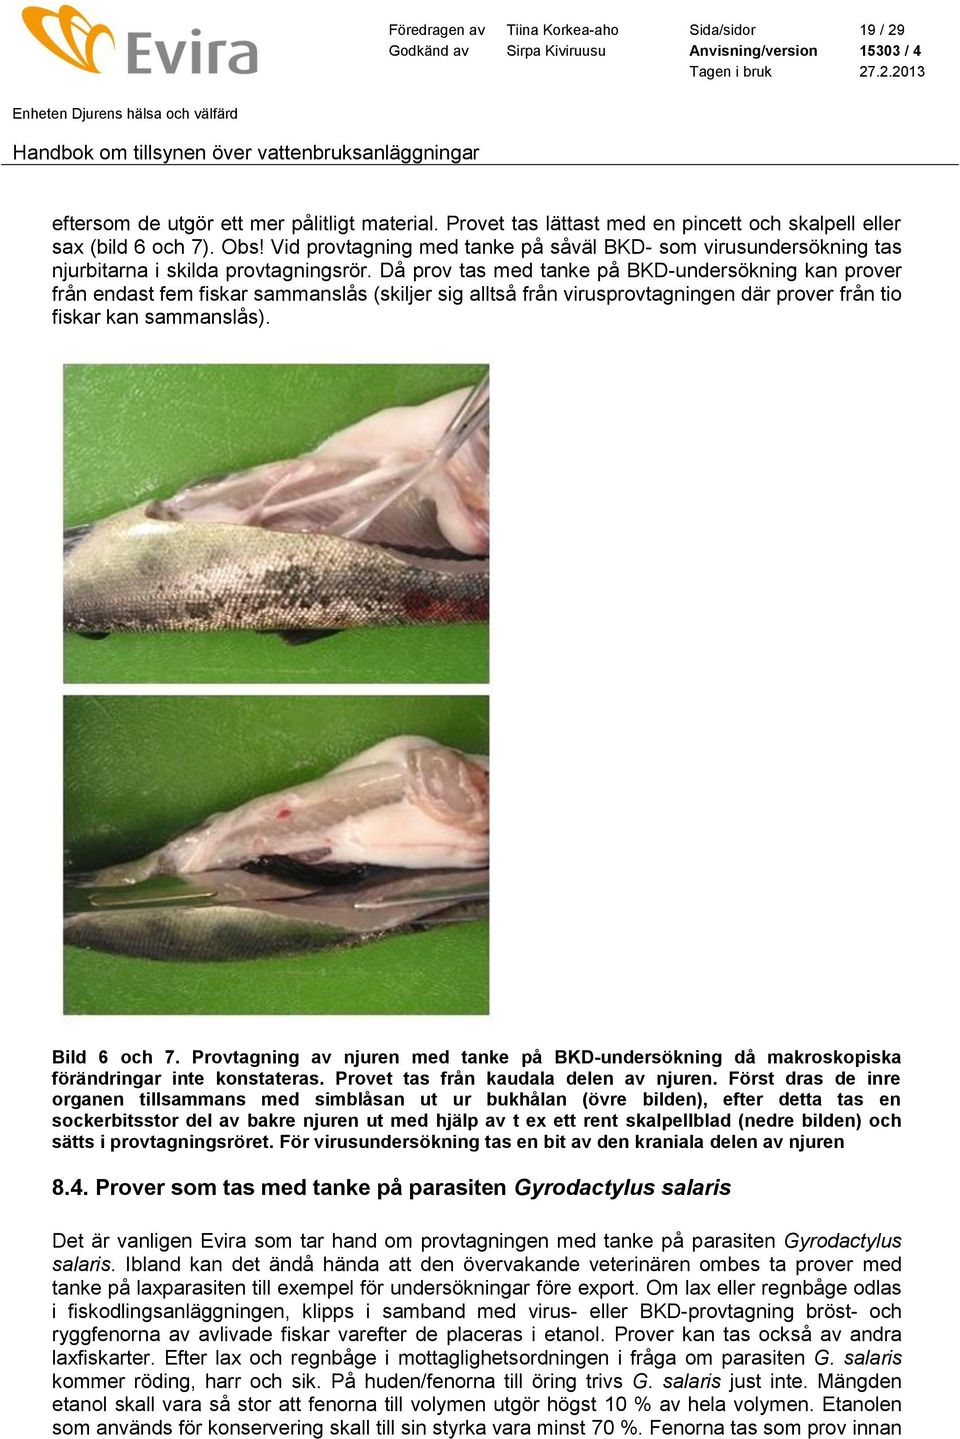 Då prov tas med tanke på BKD-undersökning kan prover från endast fem fiskar sammanslås (skiljer sig alltså från virusprovtagningen där prover från tio fiskar kan sammanslås). Bild 6 och 7.